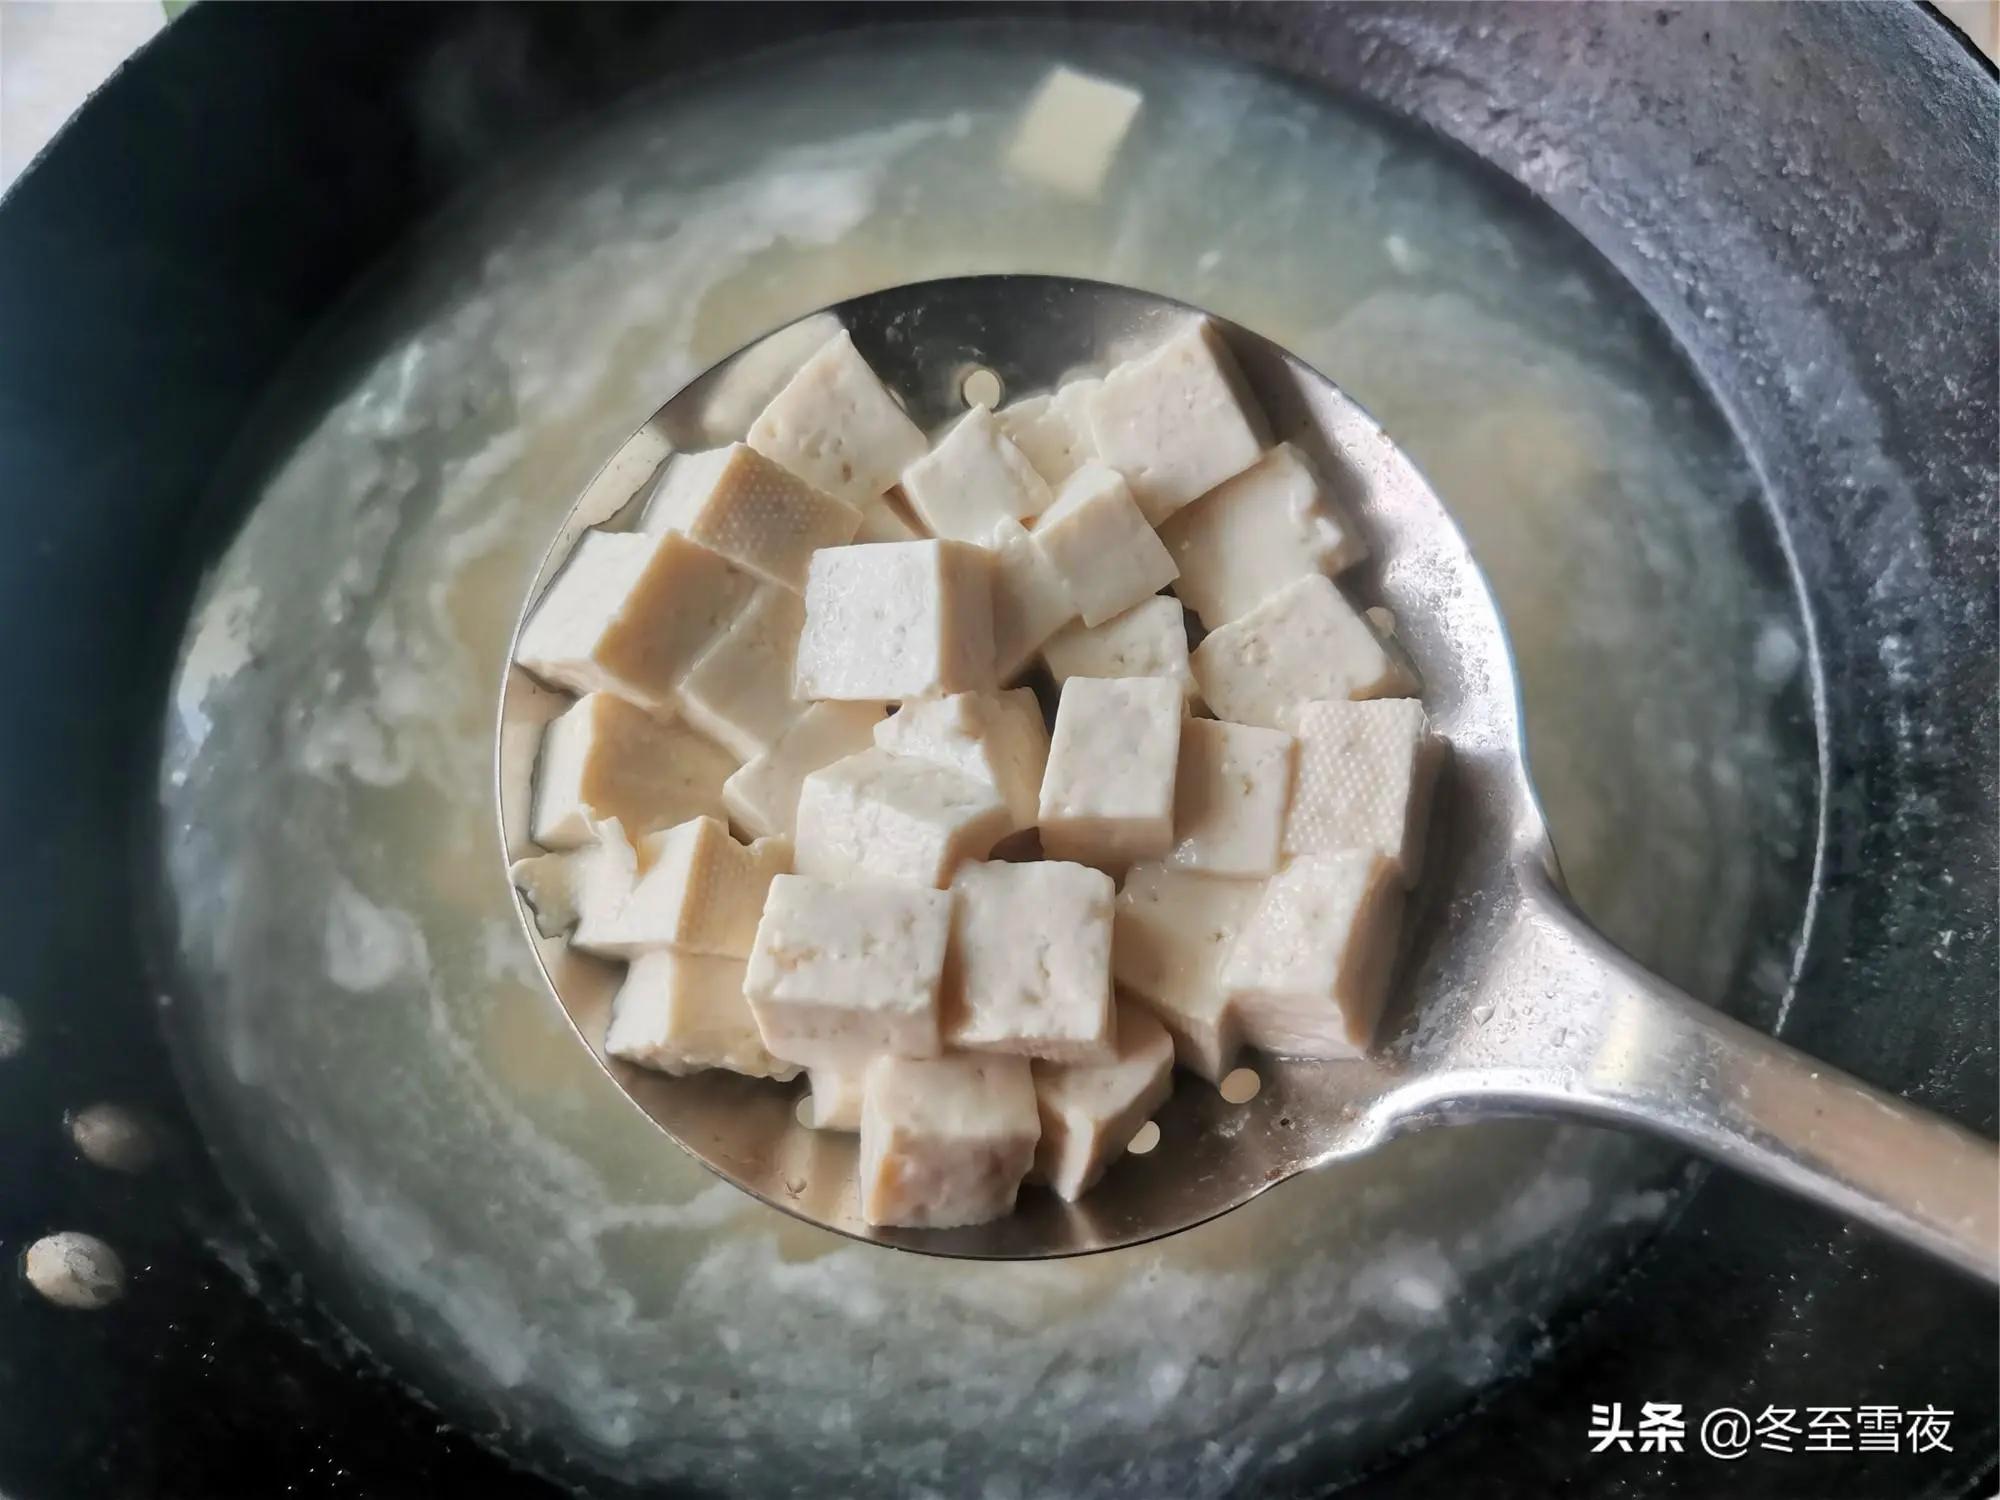 做菌菇豆腐湯 和這個食材一起煮 鮮香味美 香味撲鼻